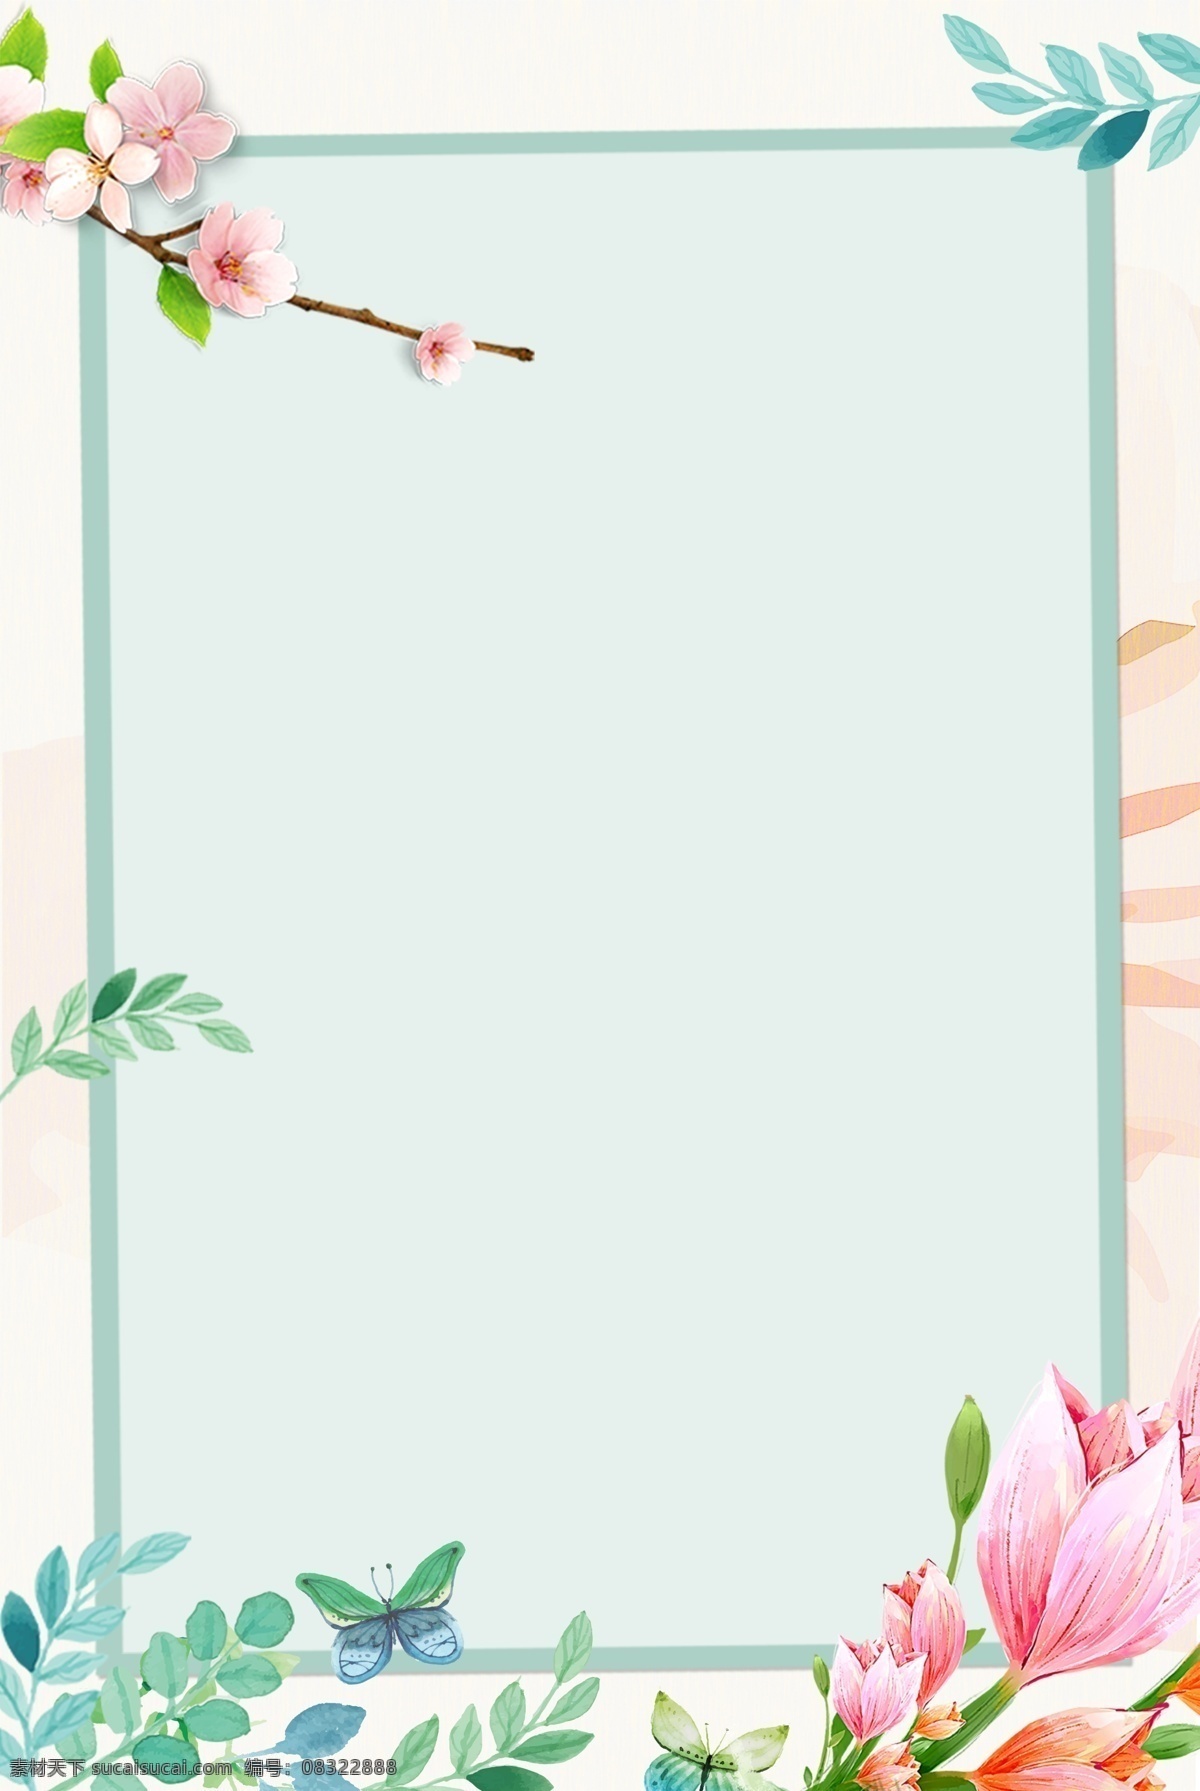 手绘 花朵 小 清新 简约 边框 海报 通用 小清新 手绘花朵 鲜花 花朵边框 鲜花边框